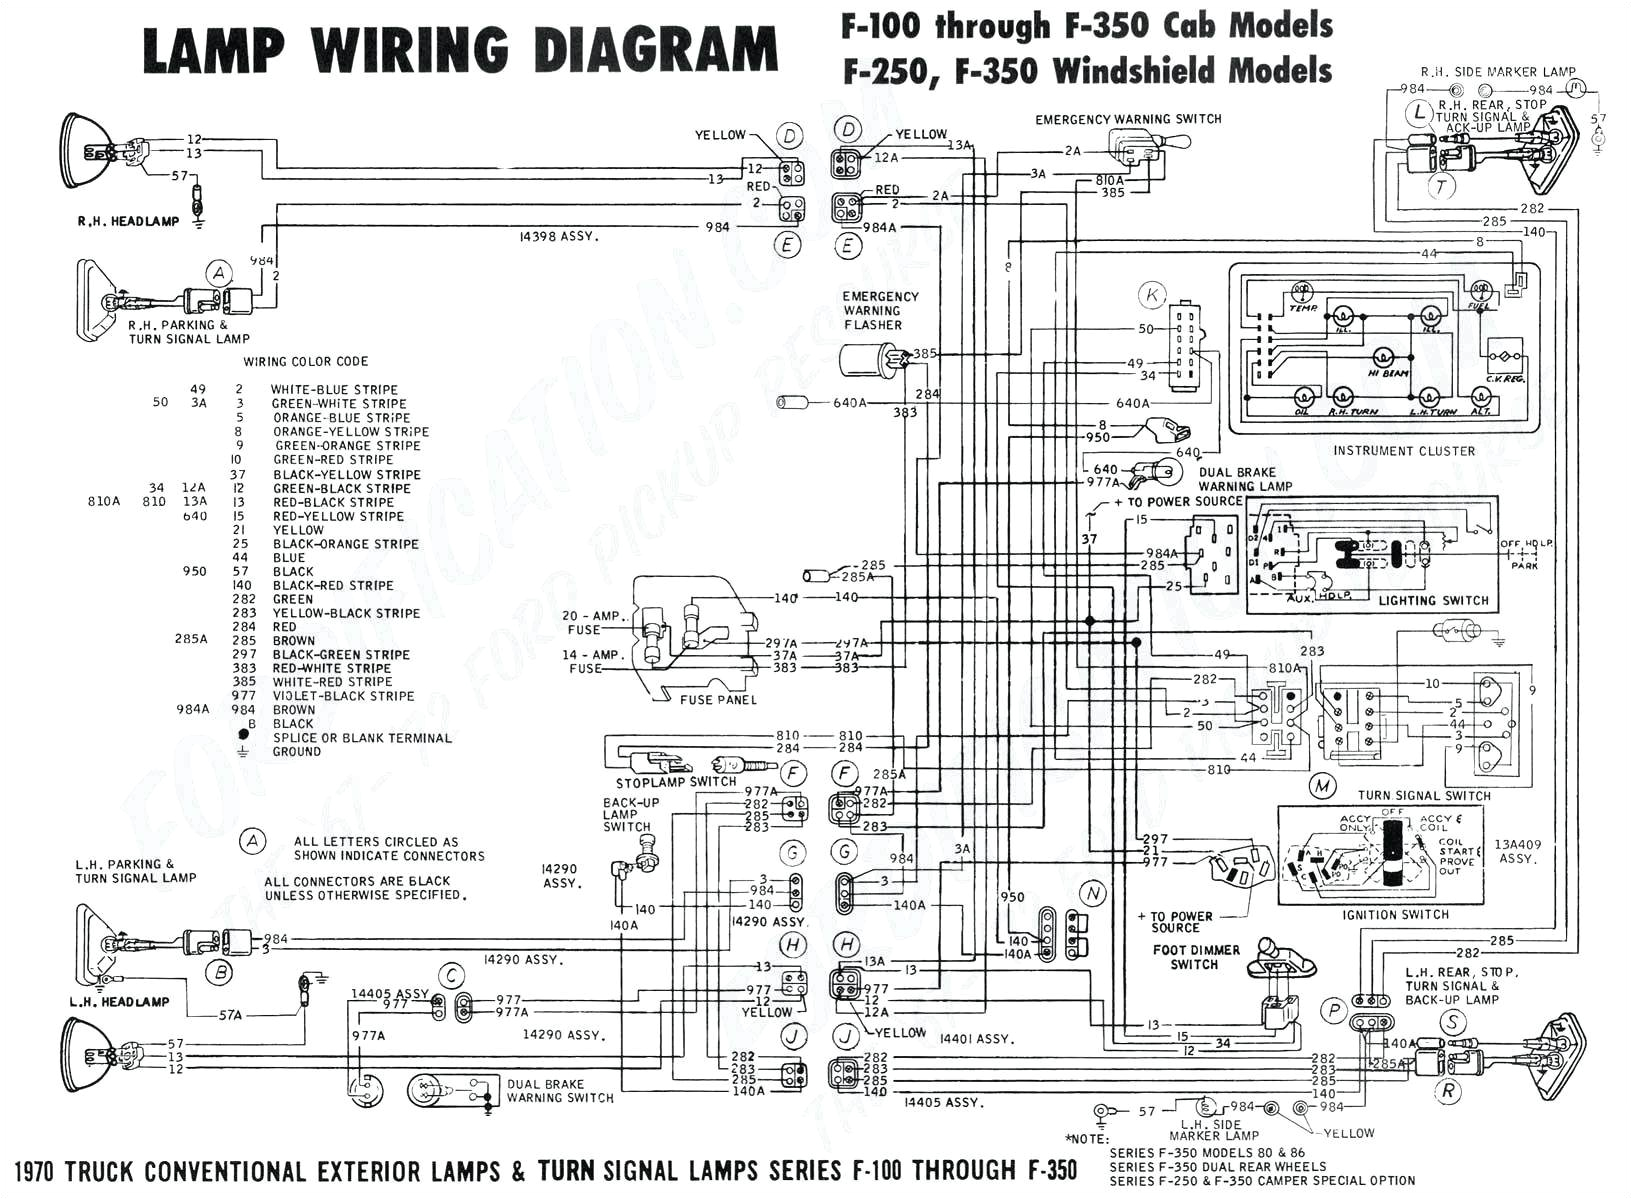 Stop Start Wiring Diagram 99 ford F 150 Wiring Diagram Wiring Diagram Database